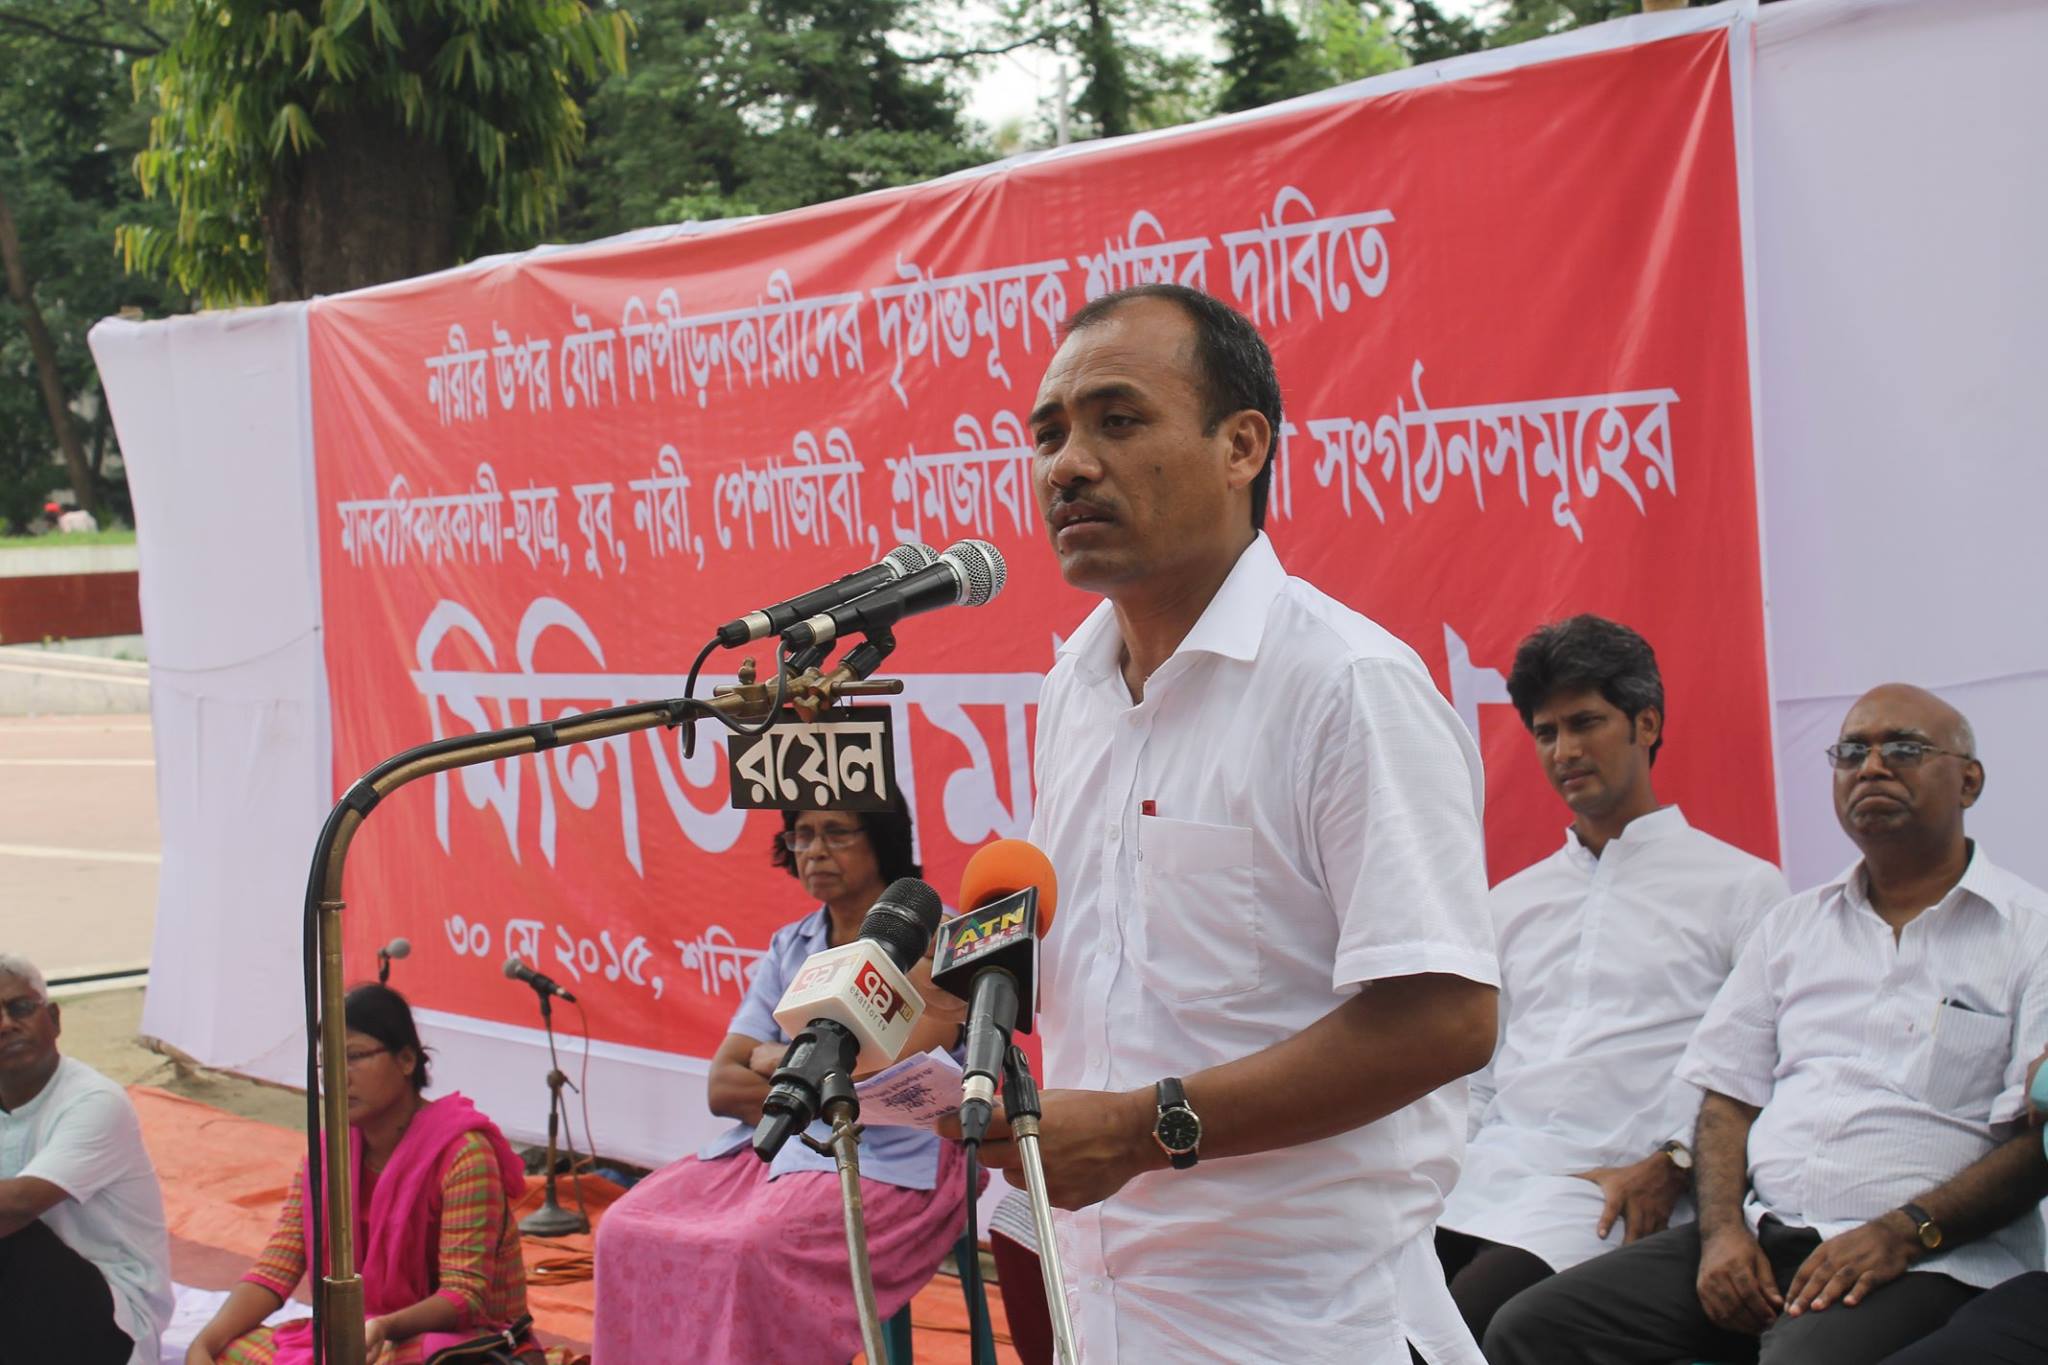 Bangladesh Adivasi Forum: Promoting Indigenous Peoples Rights in Bangladesh